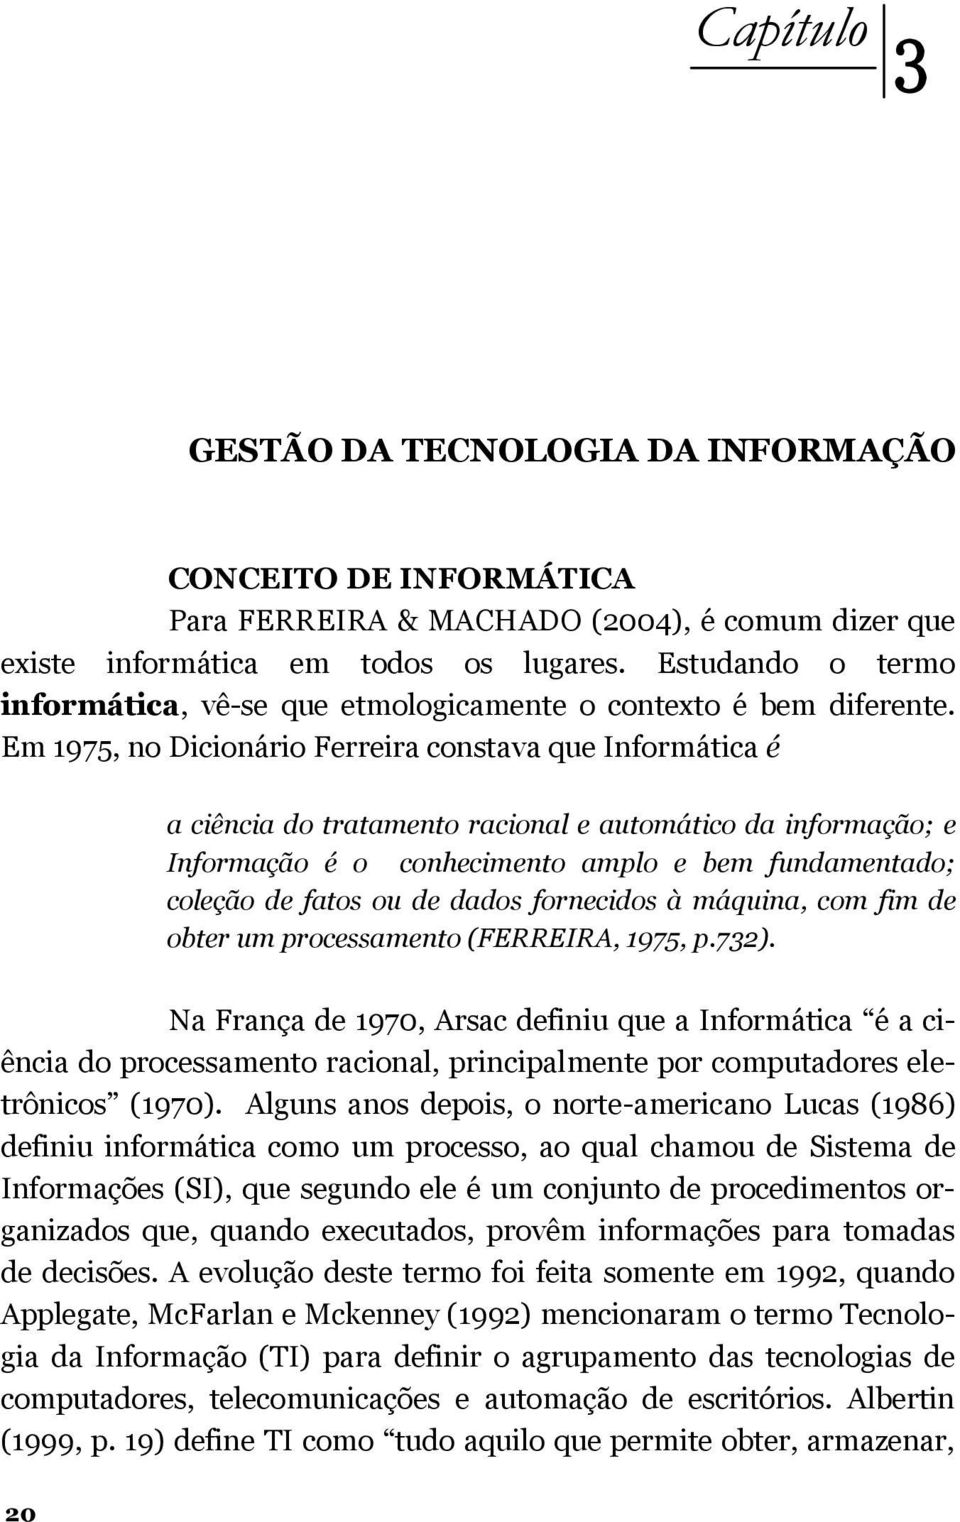 Em 1975, no Dicionário Ferreira constava que Informática é a ciência do tratamento racional e automático da informação; e Informação é o conhecimento amplo e bem fundamentado; coleção de fatos ou de